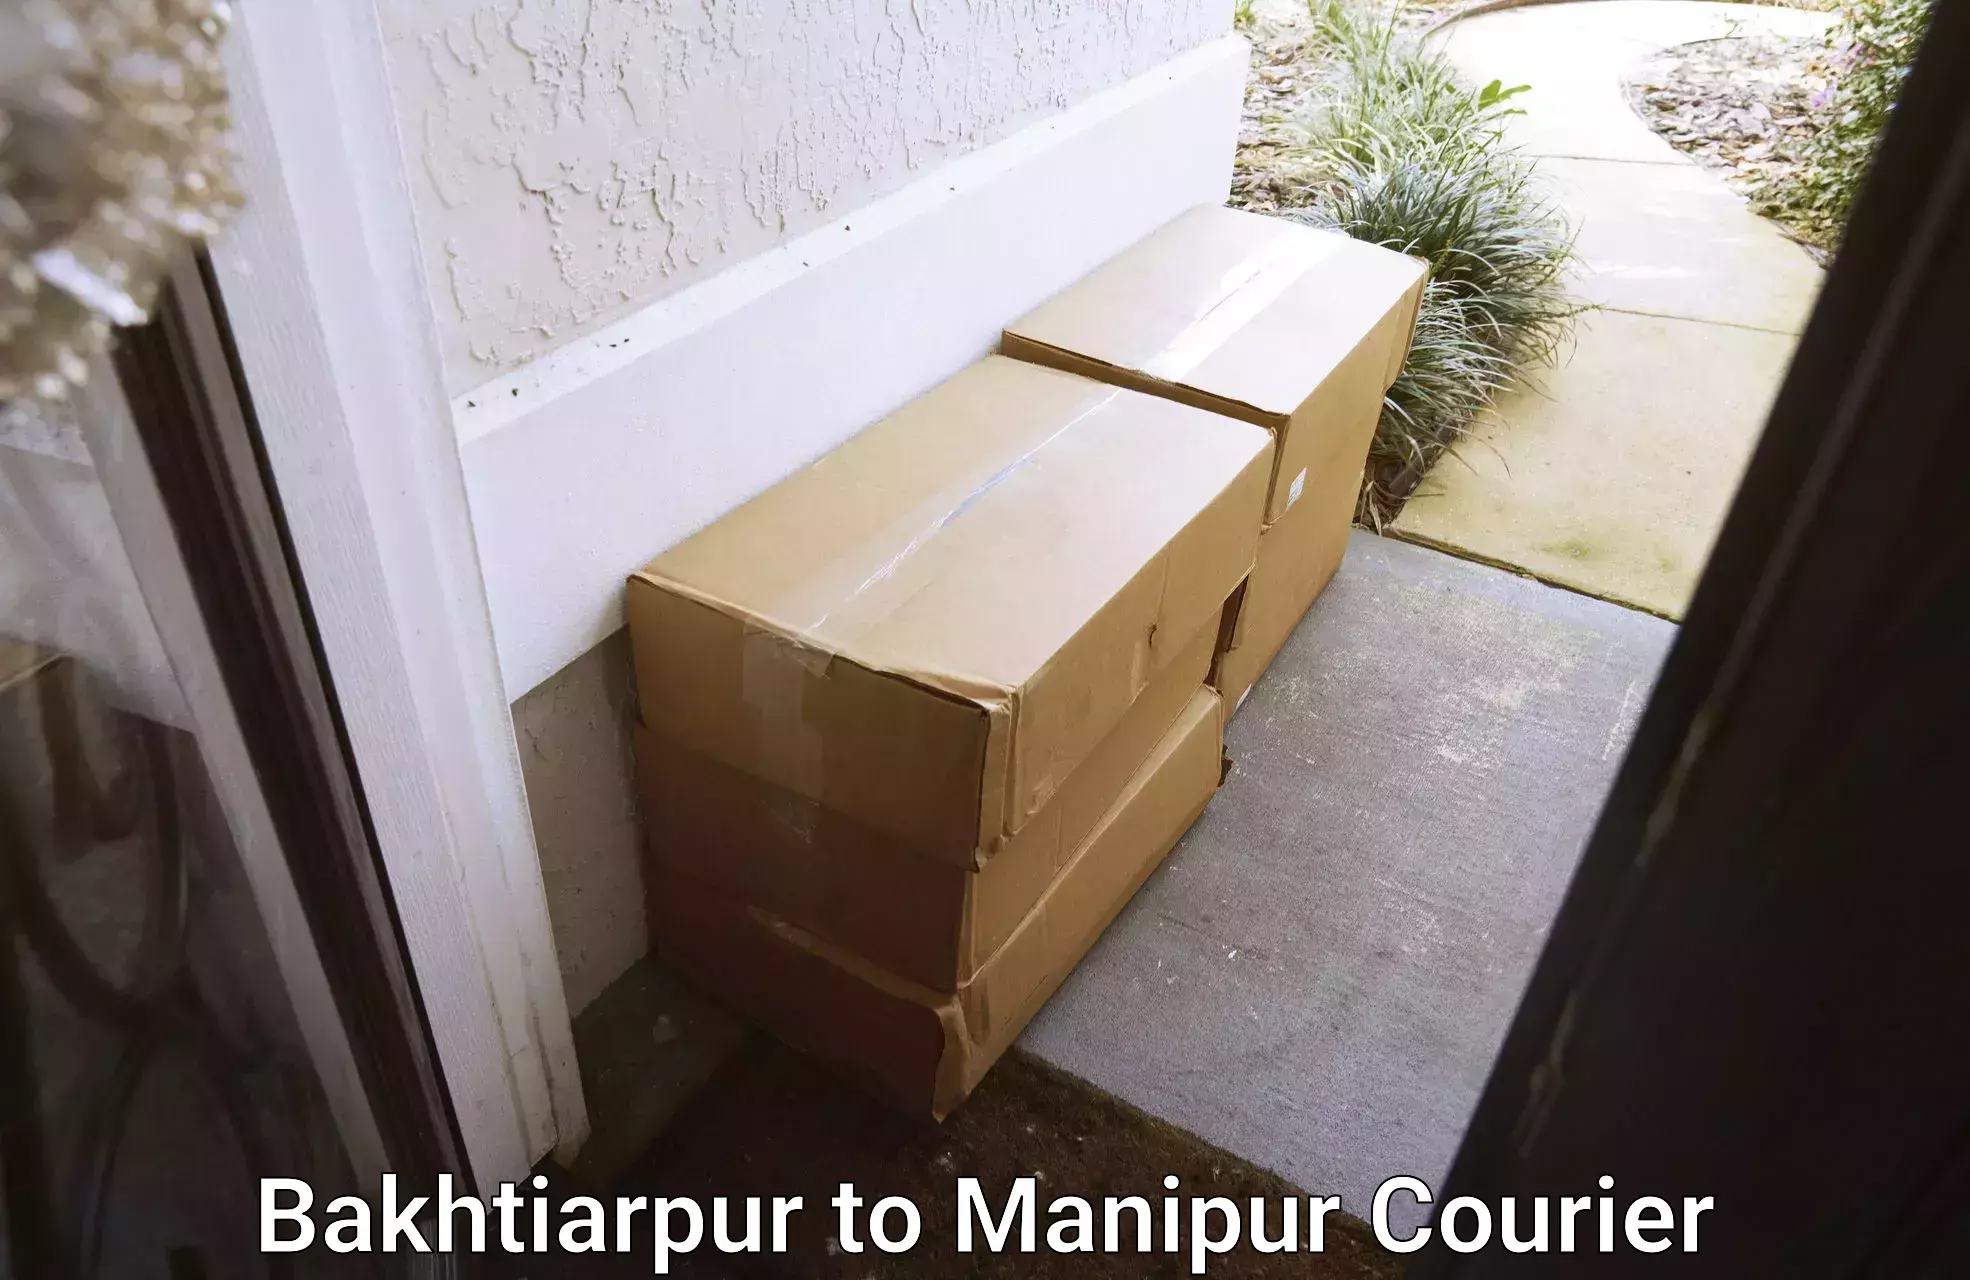 Furniture transport experts Bakhtiarpur to Kanti